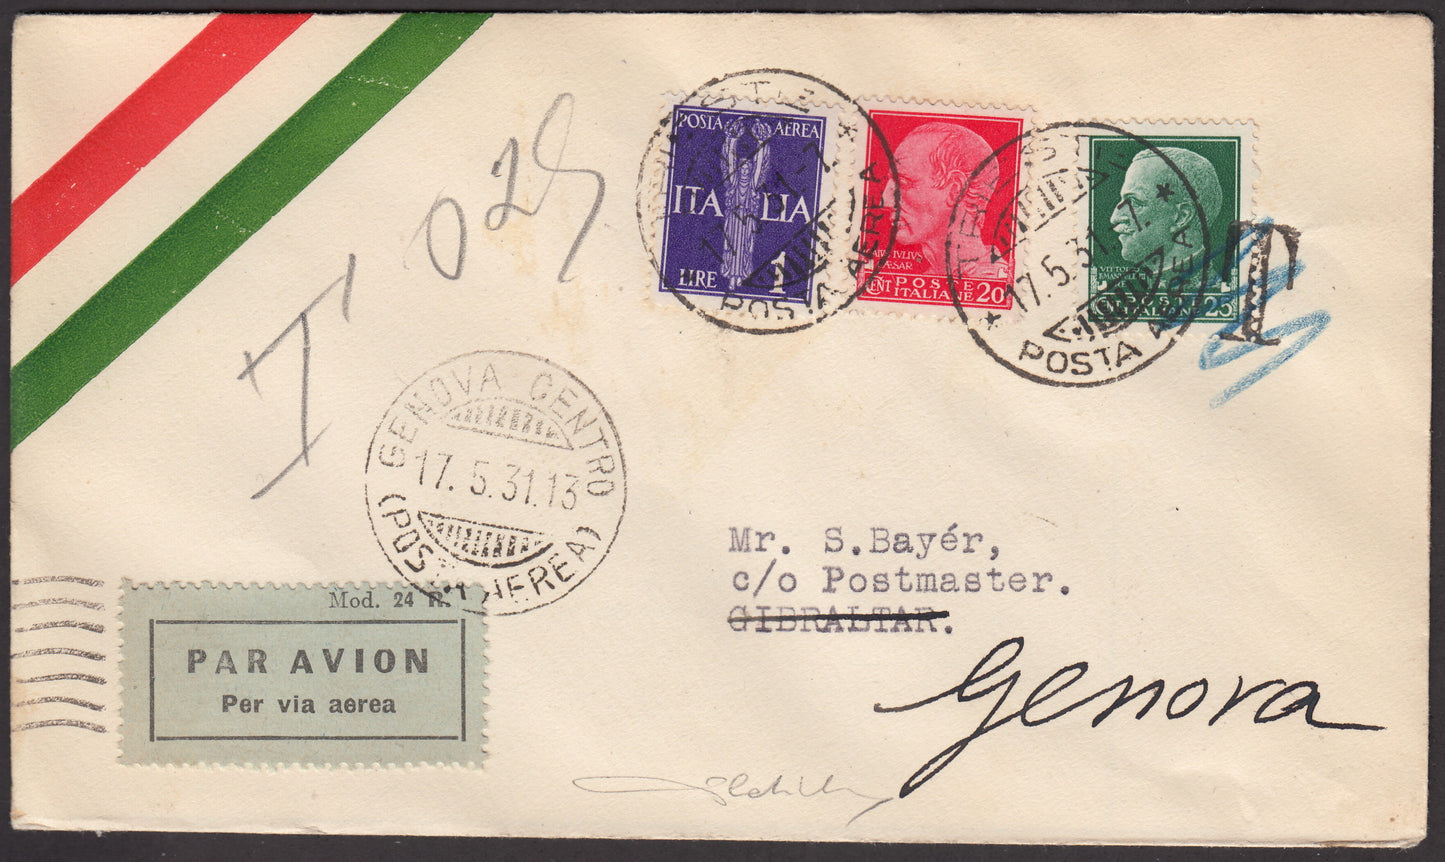 1931 - Primo Volo Genova - Gibilterra 17/5/31 affrancato con imperiale c. 20 carminio + c. 25 verde + PA L. 1 violetto (247 + 248 + PA14)